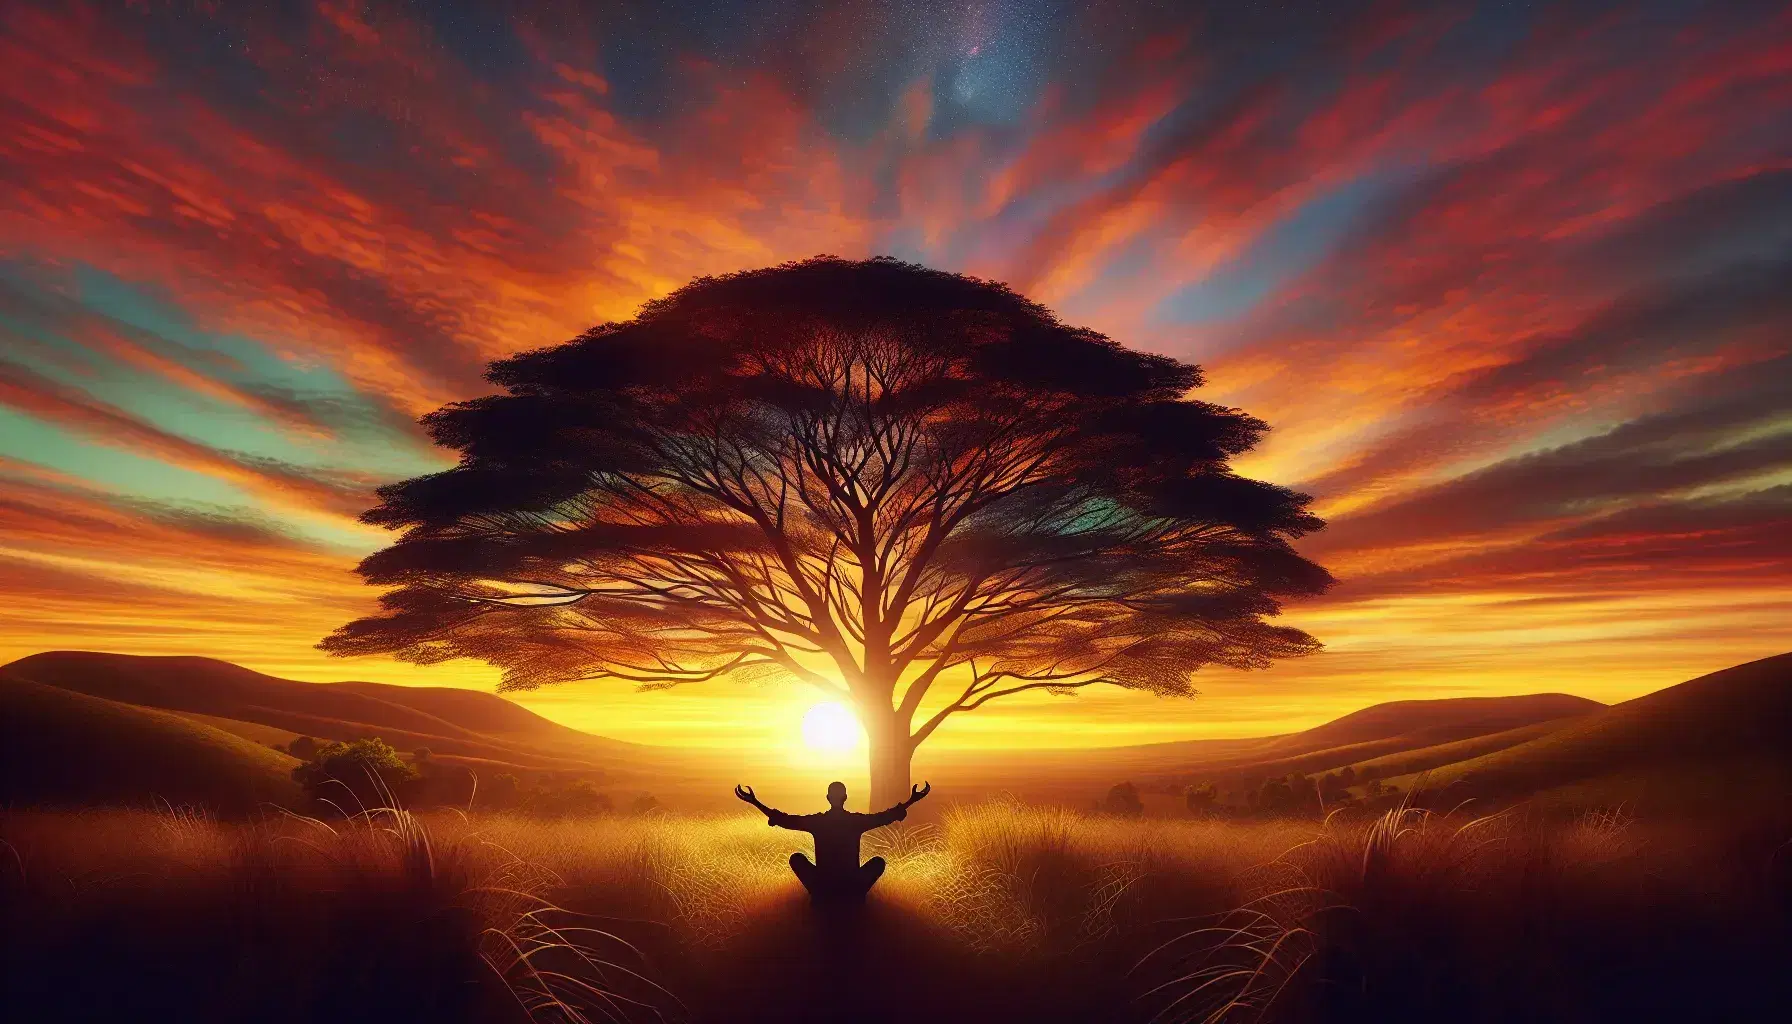 Tramonto naturale con albero frondoso e figura umana in silhouette che medita, cielo colorato e colline in lontananza.